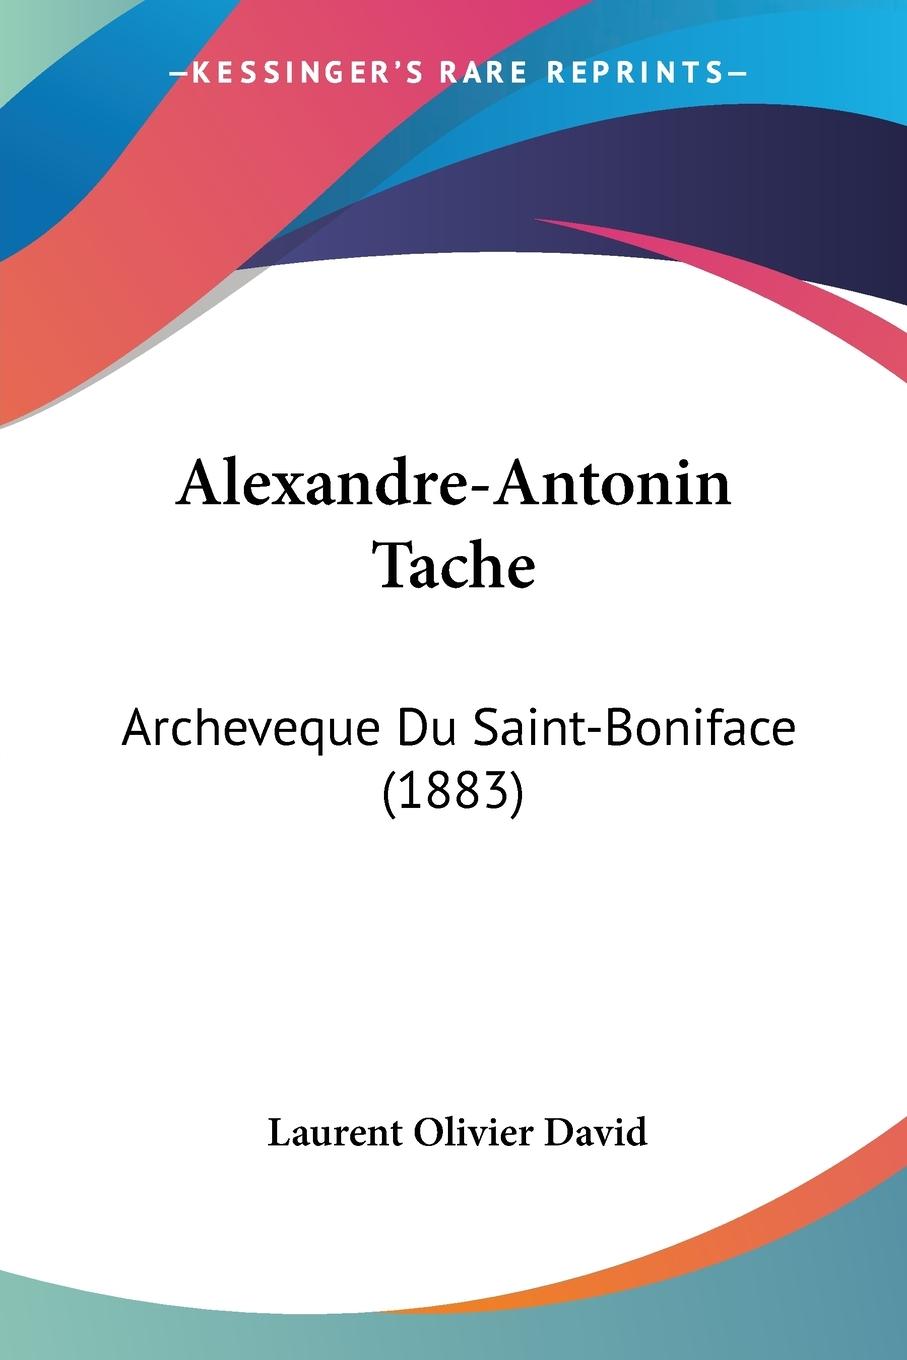 Alexandre-Antonin Tache - David, Laurent Olivier